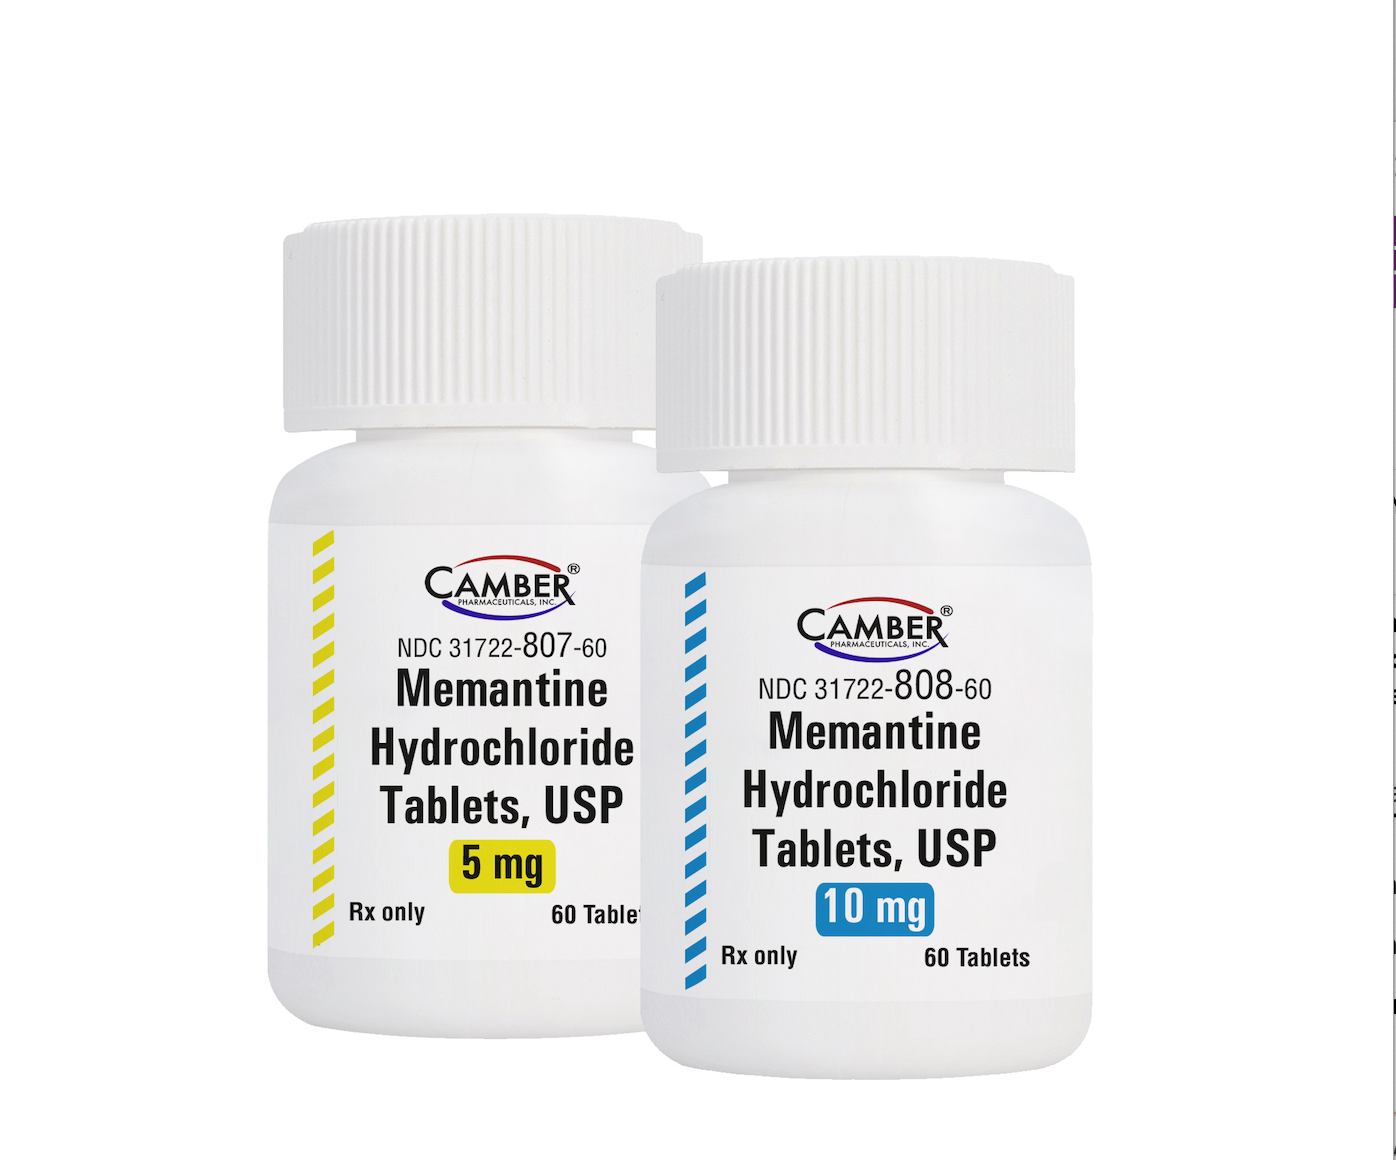 Camber Pharmaceuticals Launches Generic Namenda®